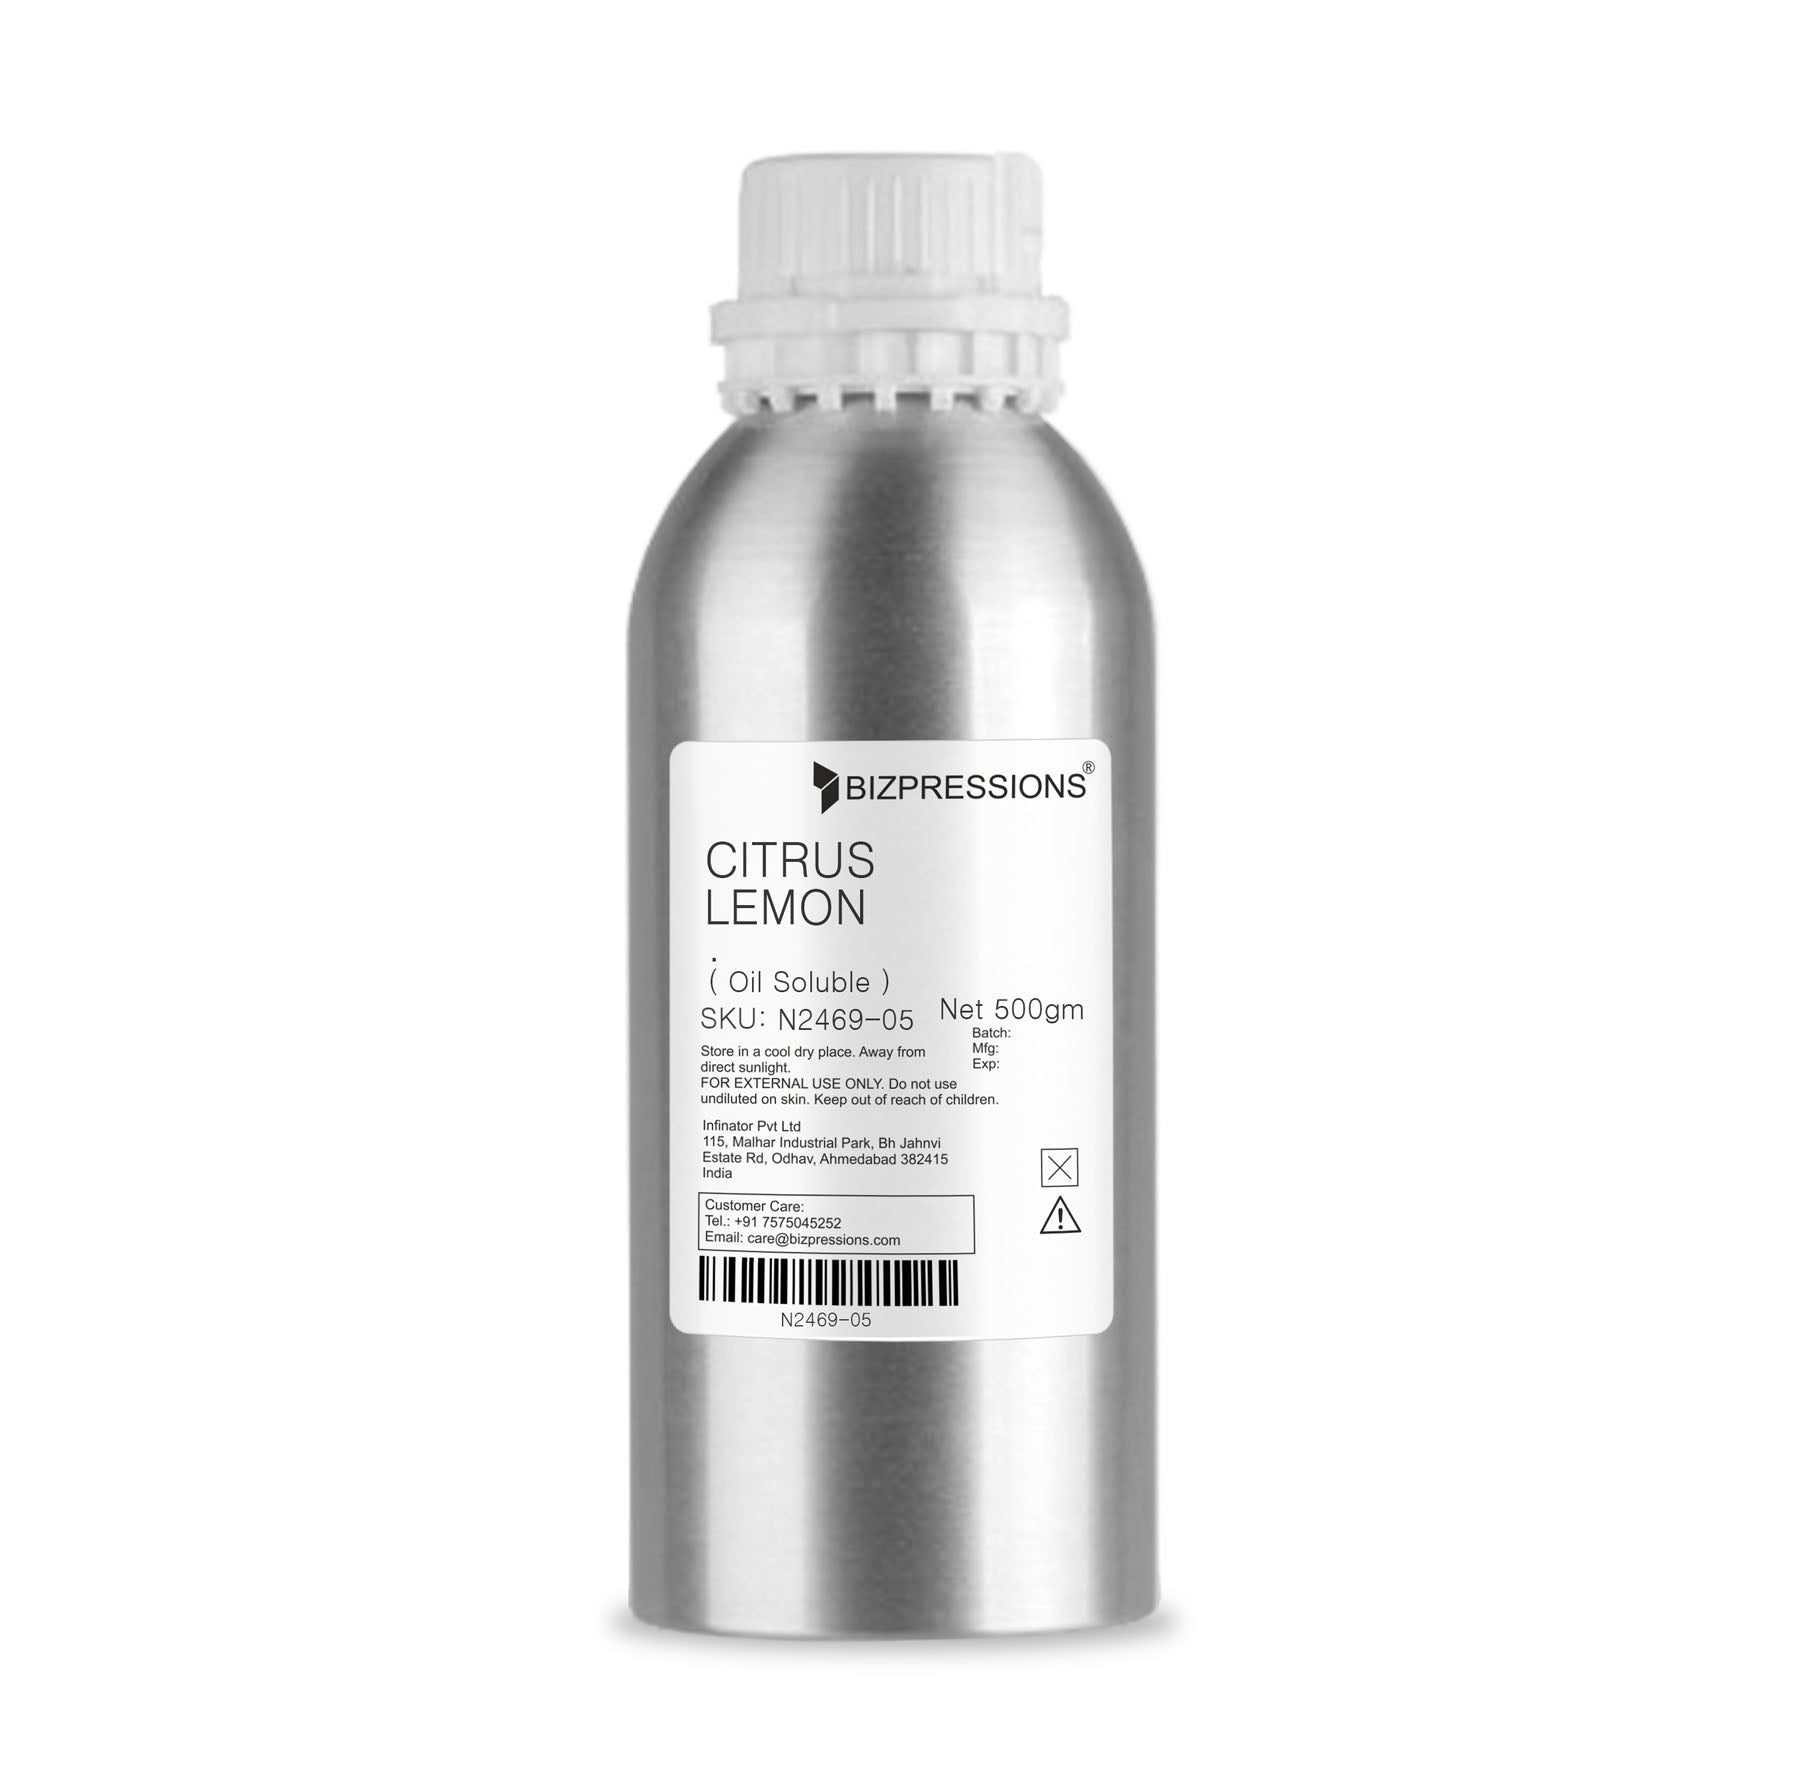 CITRUS LEMON - Fragrance ( Oil Soluble ) - 500 gm